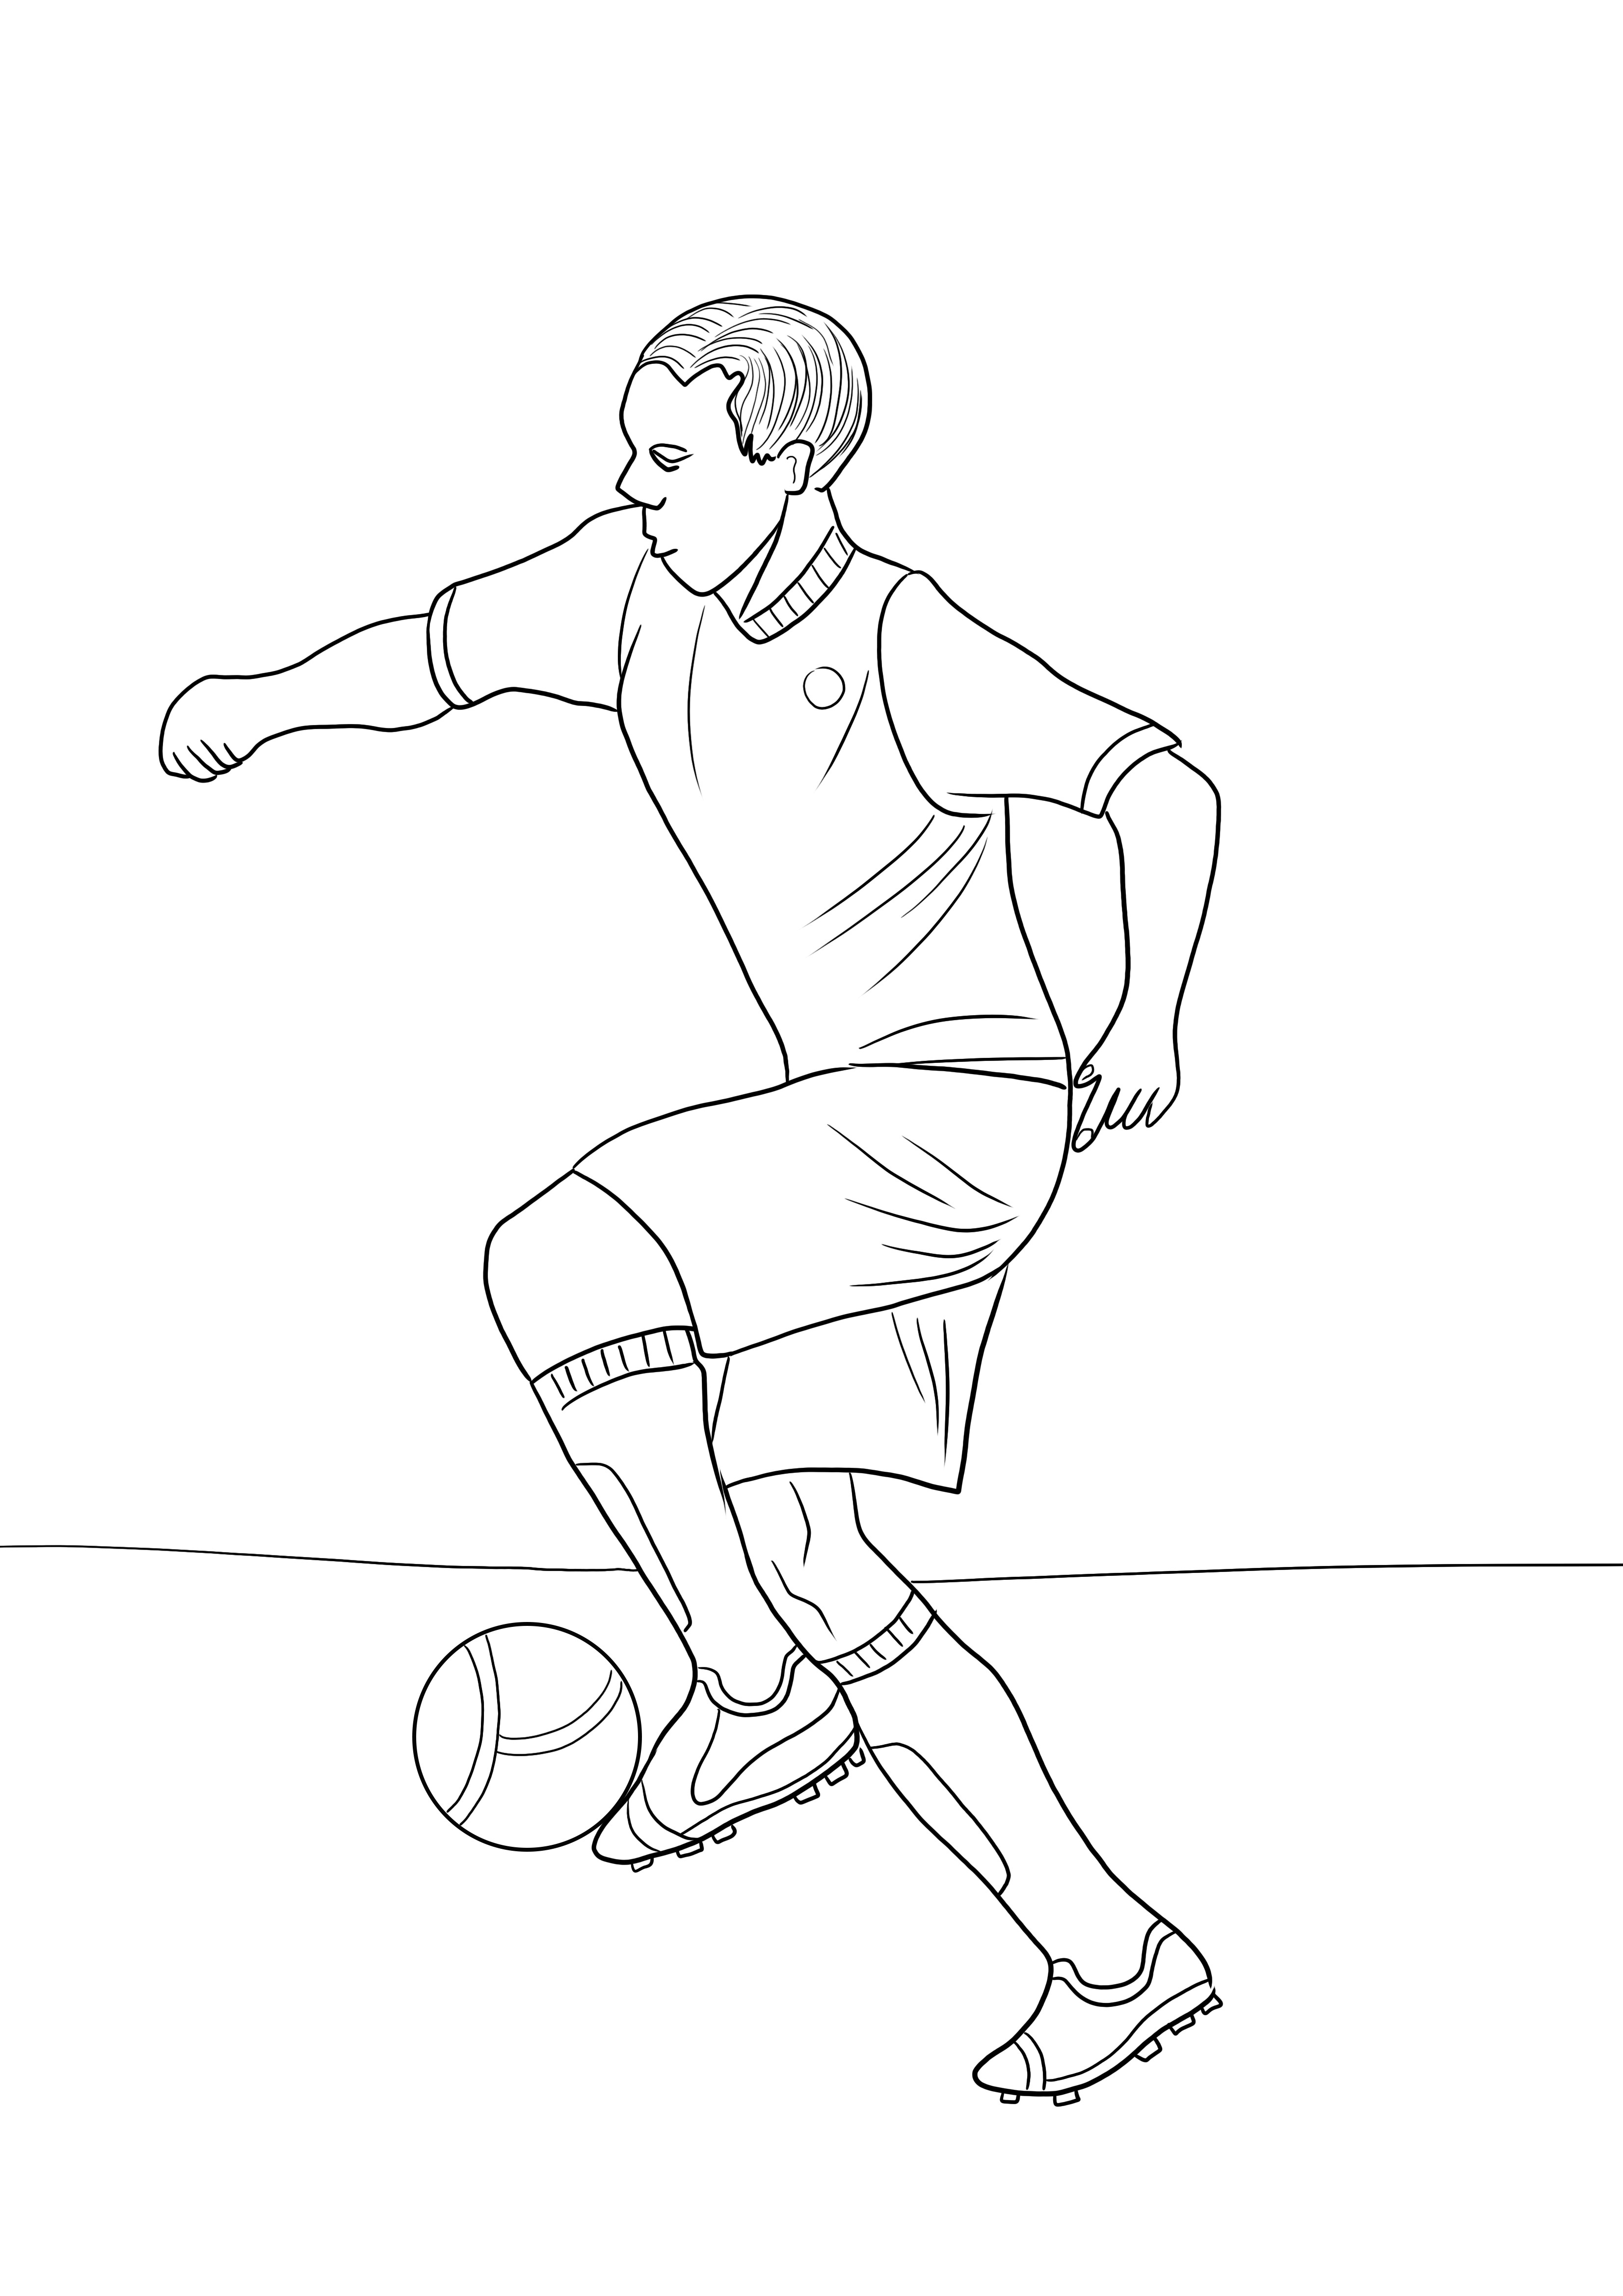 Descărcarea gratuită și imaginea colorată a unui jucător de fotbal pentru o înclinare ușoară a subiectului sportiv